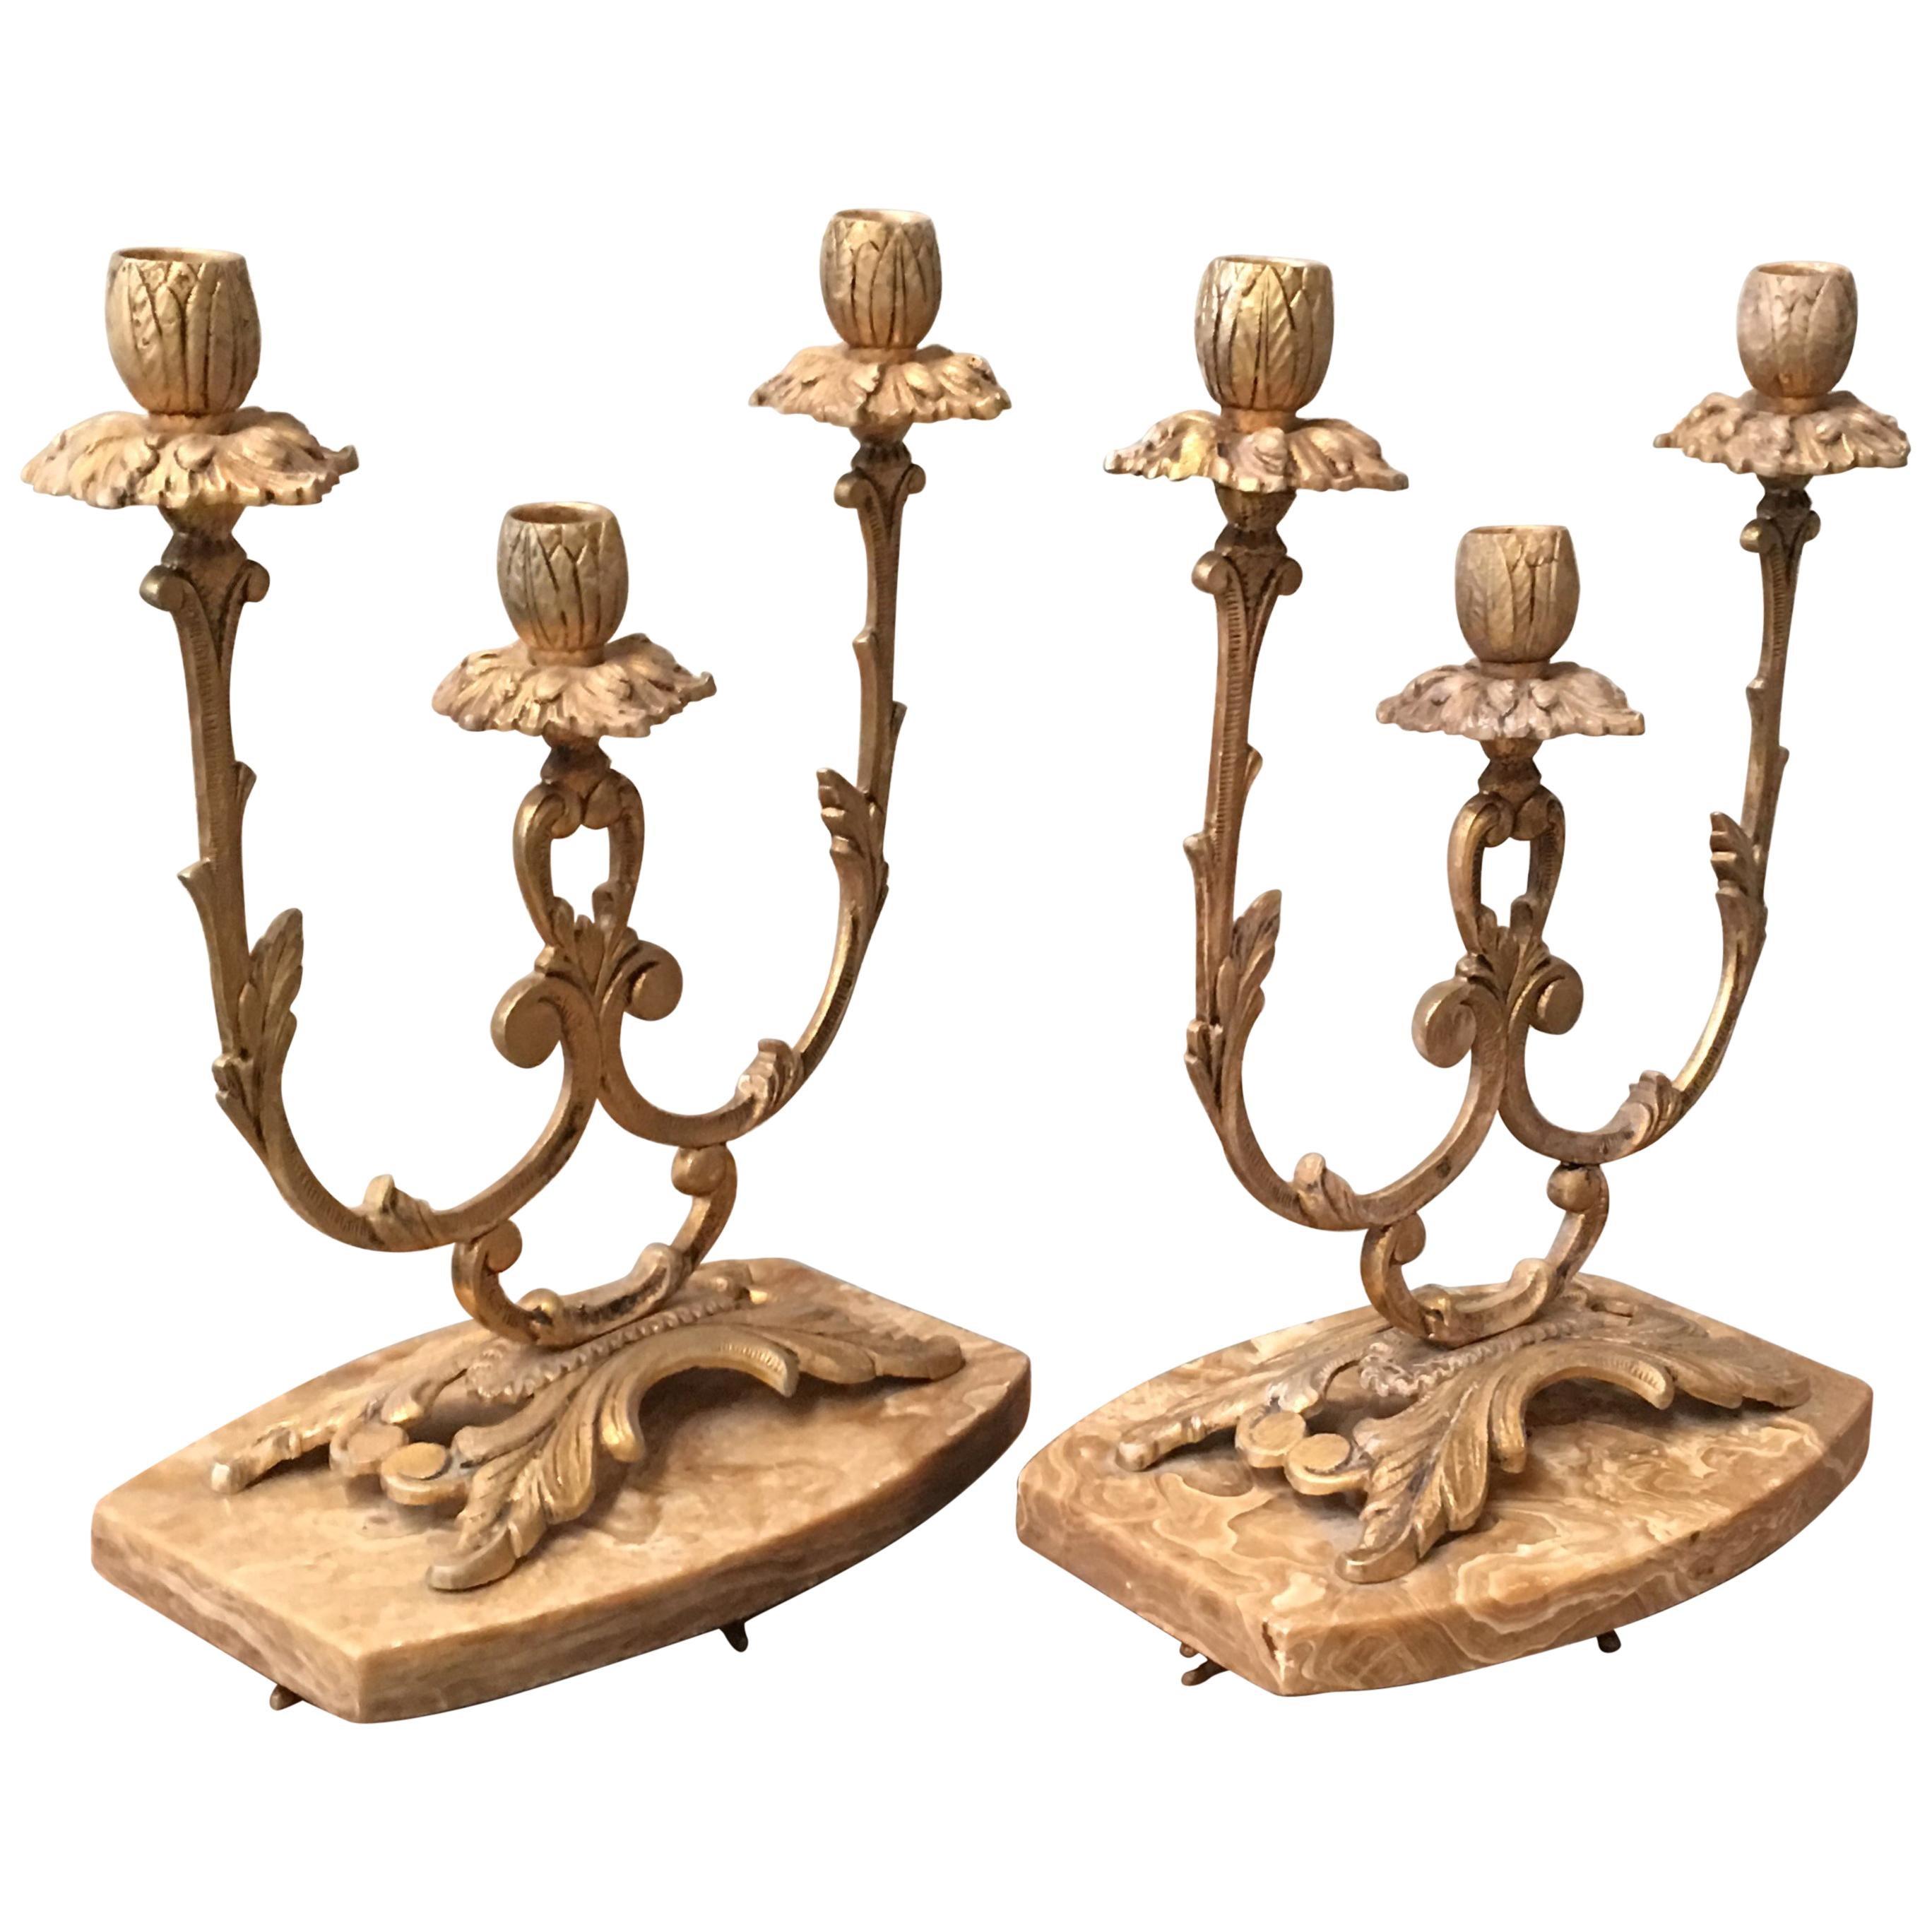 Paire de candélabres français de style Louis XVI du 19e siècle à trois bras à volutes